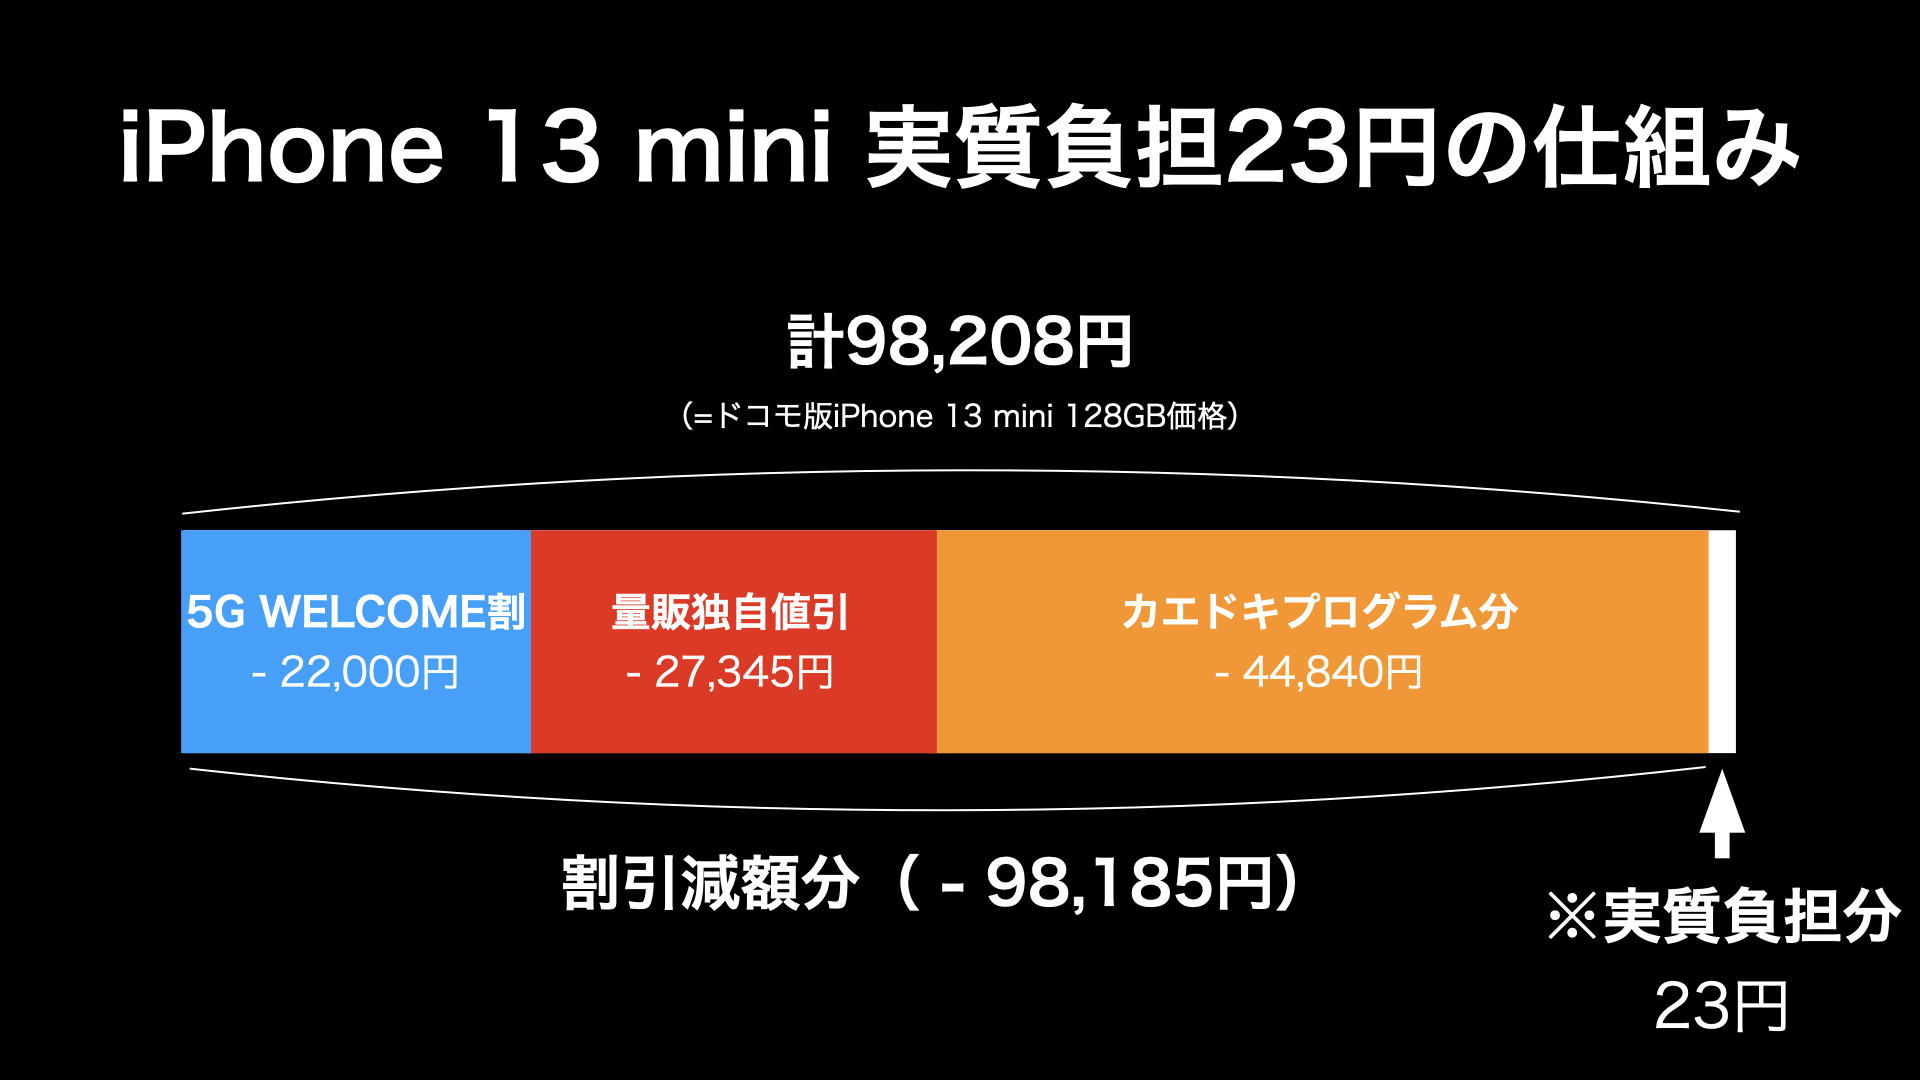 仕組み解説】iPhone 13 miniが実質23円で使える仕組み | SIM本舗